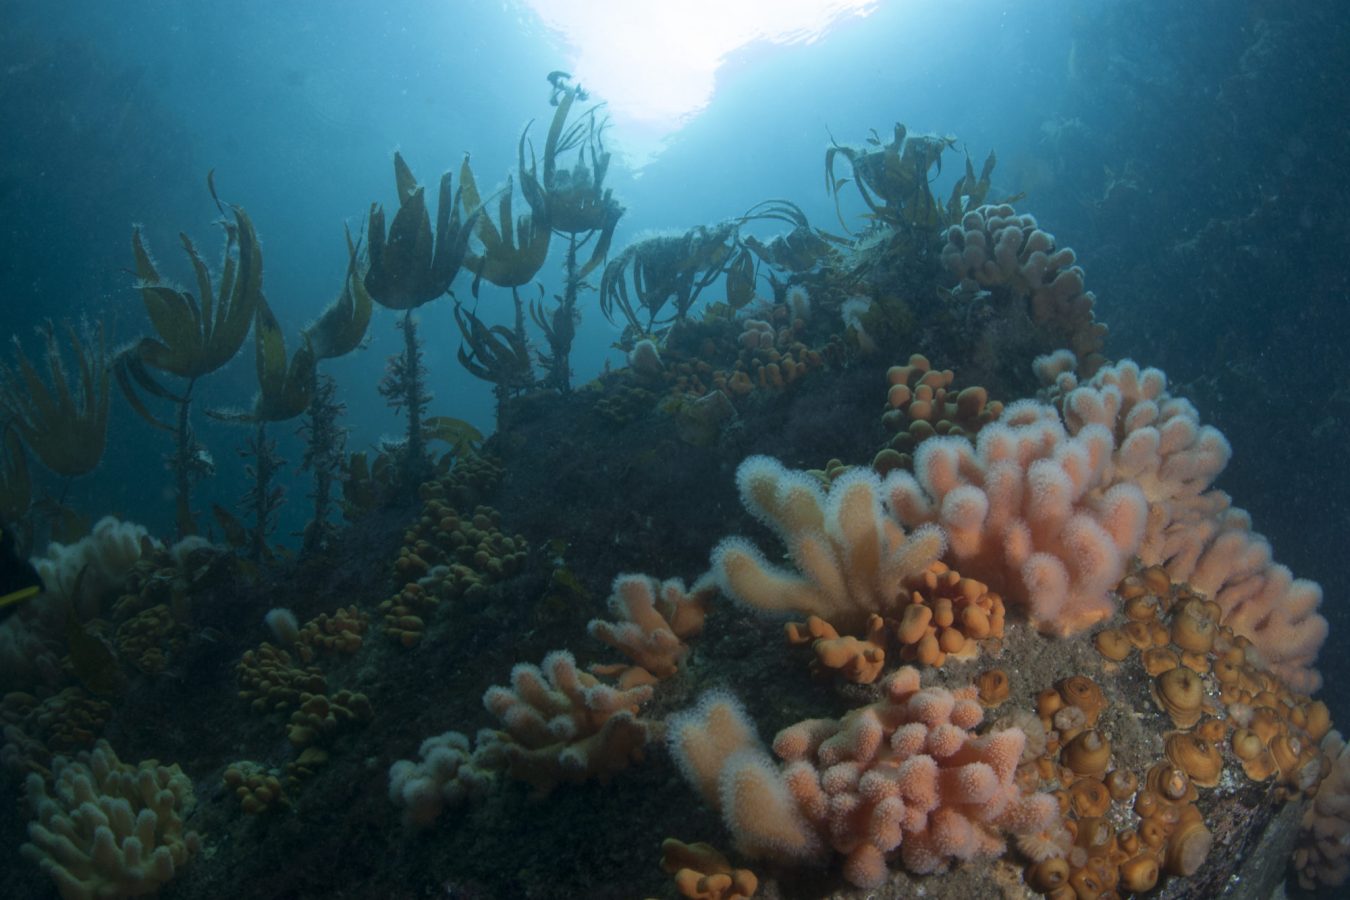 Fotografi av havbunnen med sjøplanter, tang og koraller som vokser på steinene